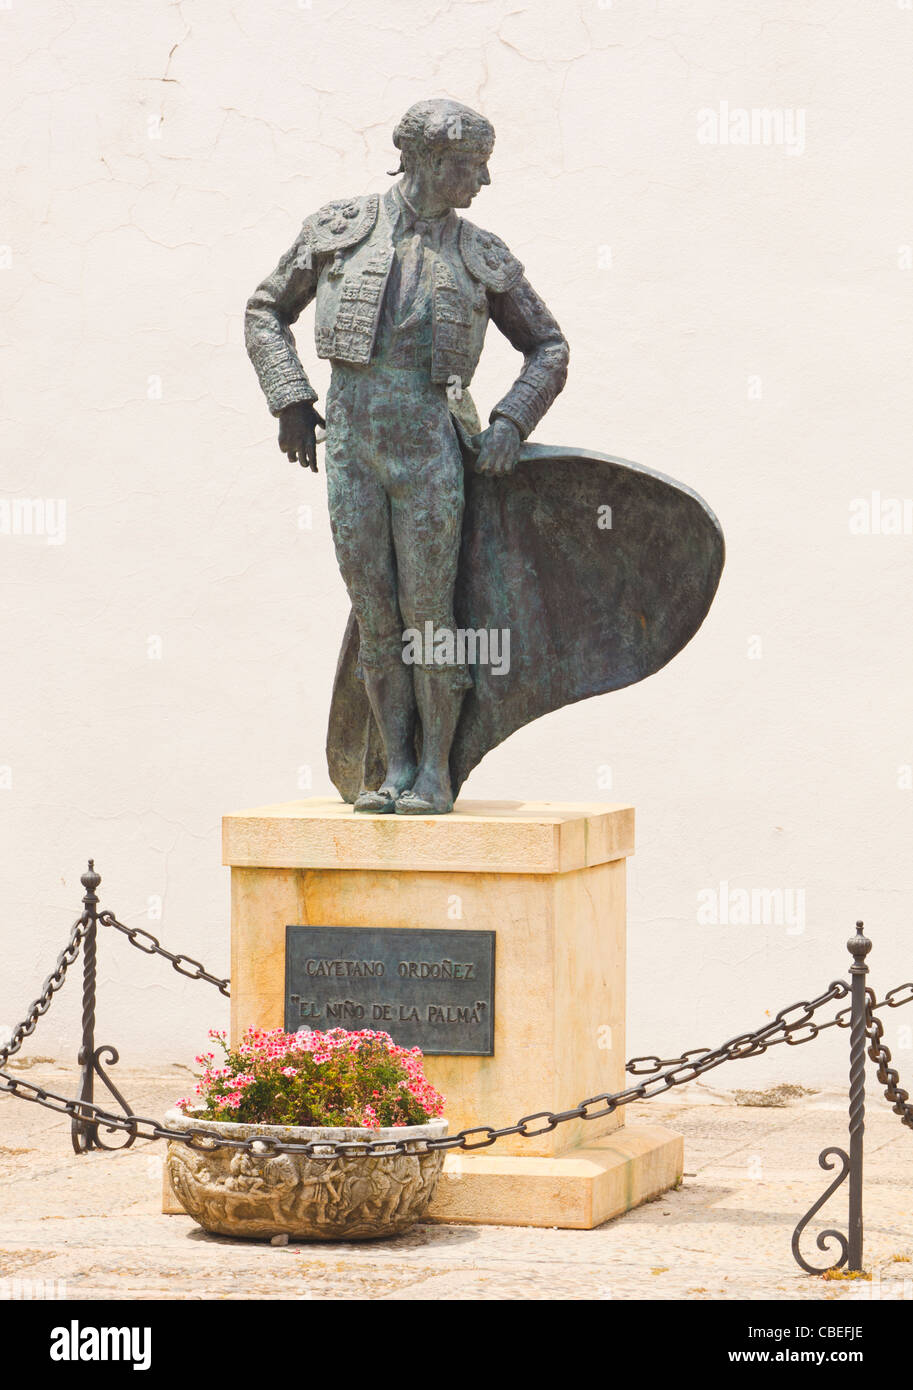 Ronda, provincia di Malaga, Spagna. Statua del torero Cayetano Ordonez, El Niño de La Palma, 1904 - 1961, al di fuori della corrida Foto Stock